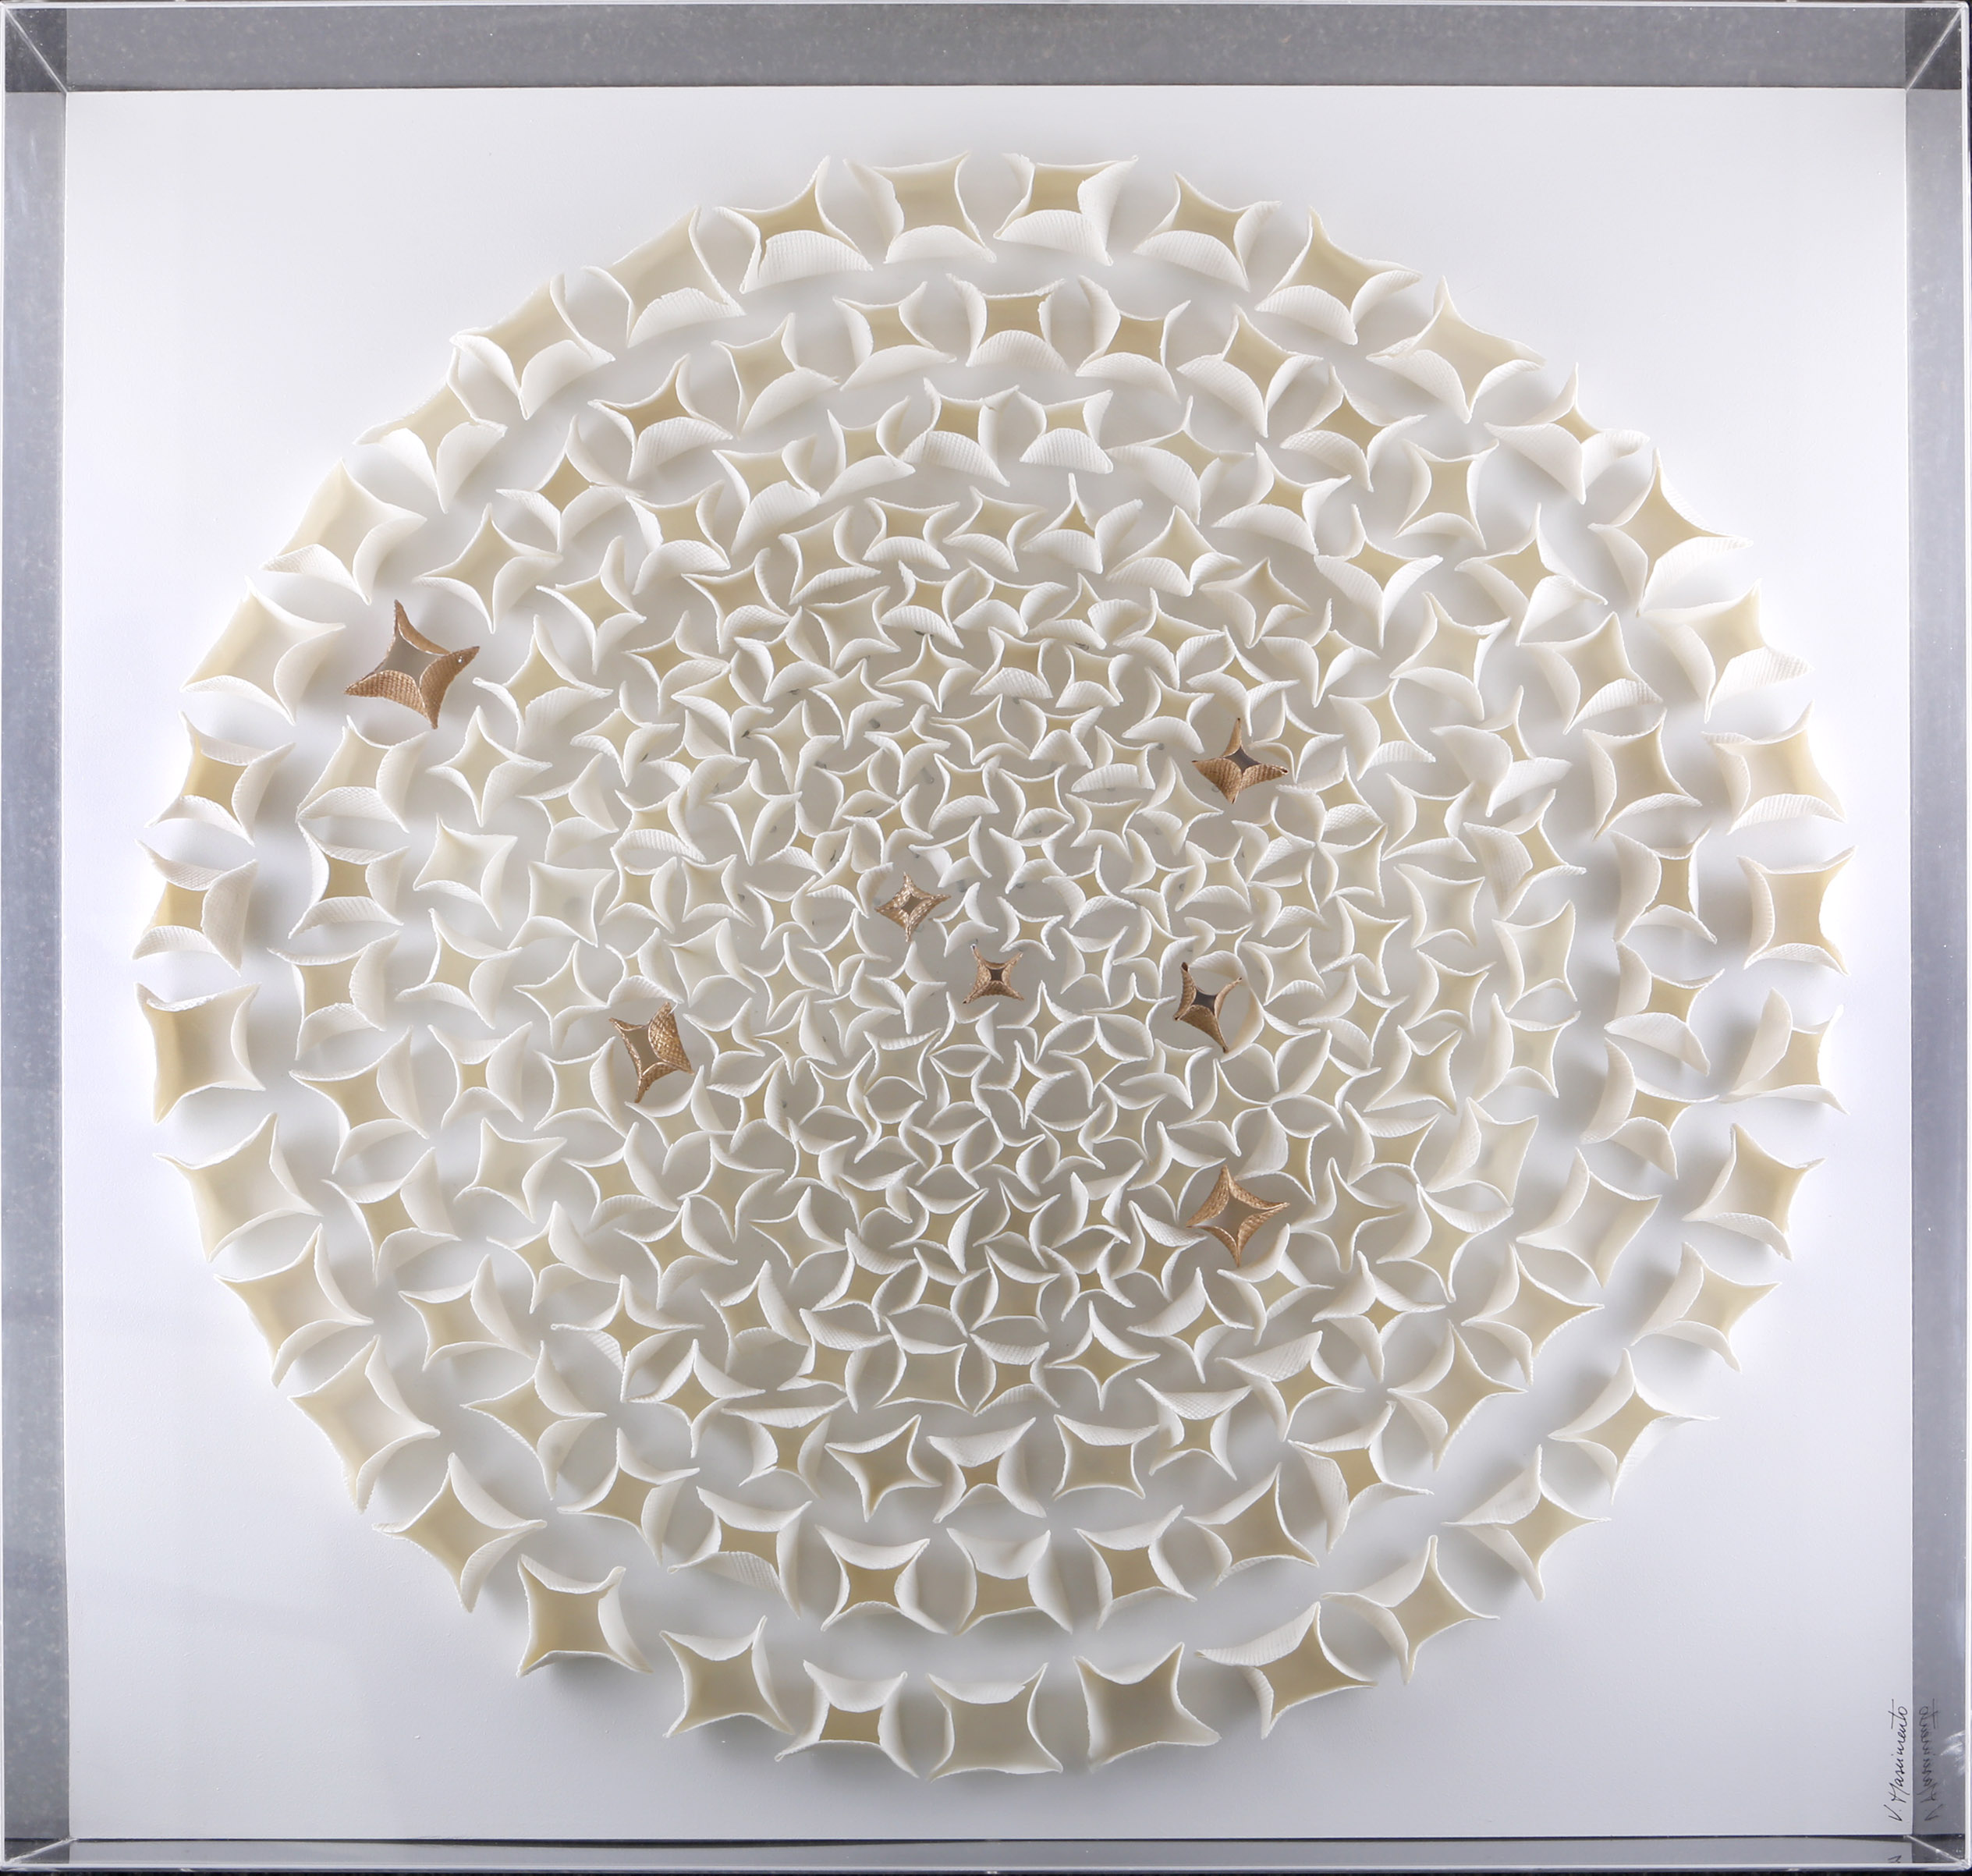 Valeria Nascimento (Brasil, 1962), White Flower, 2008, ivory and gilded porcelain sculptural group